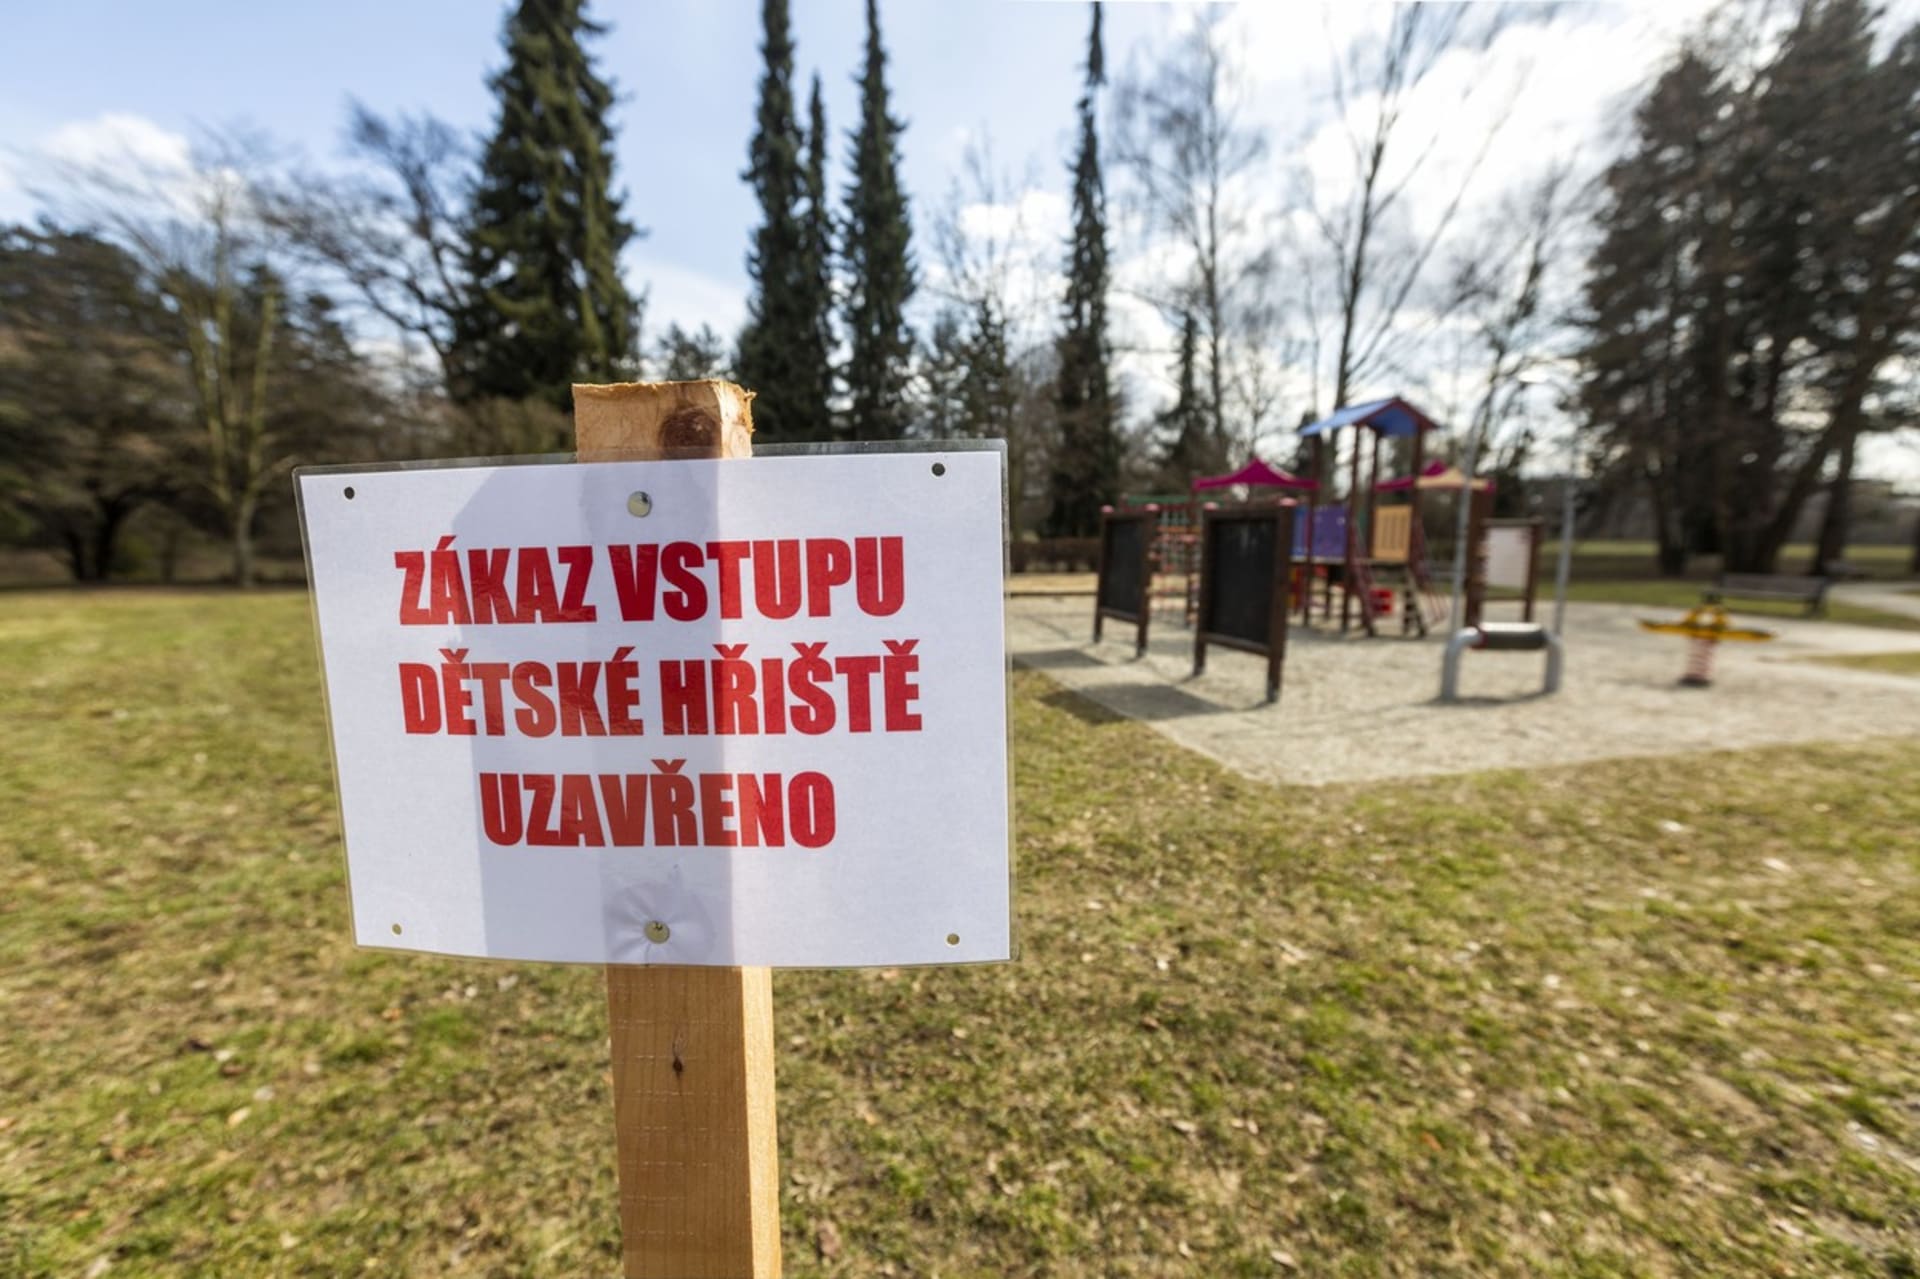 Místo na dětské hřiště raději zatím vezměte děti do lesa, doporučil rodičům ministr zdravotnictví Jan Blatný.